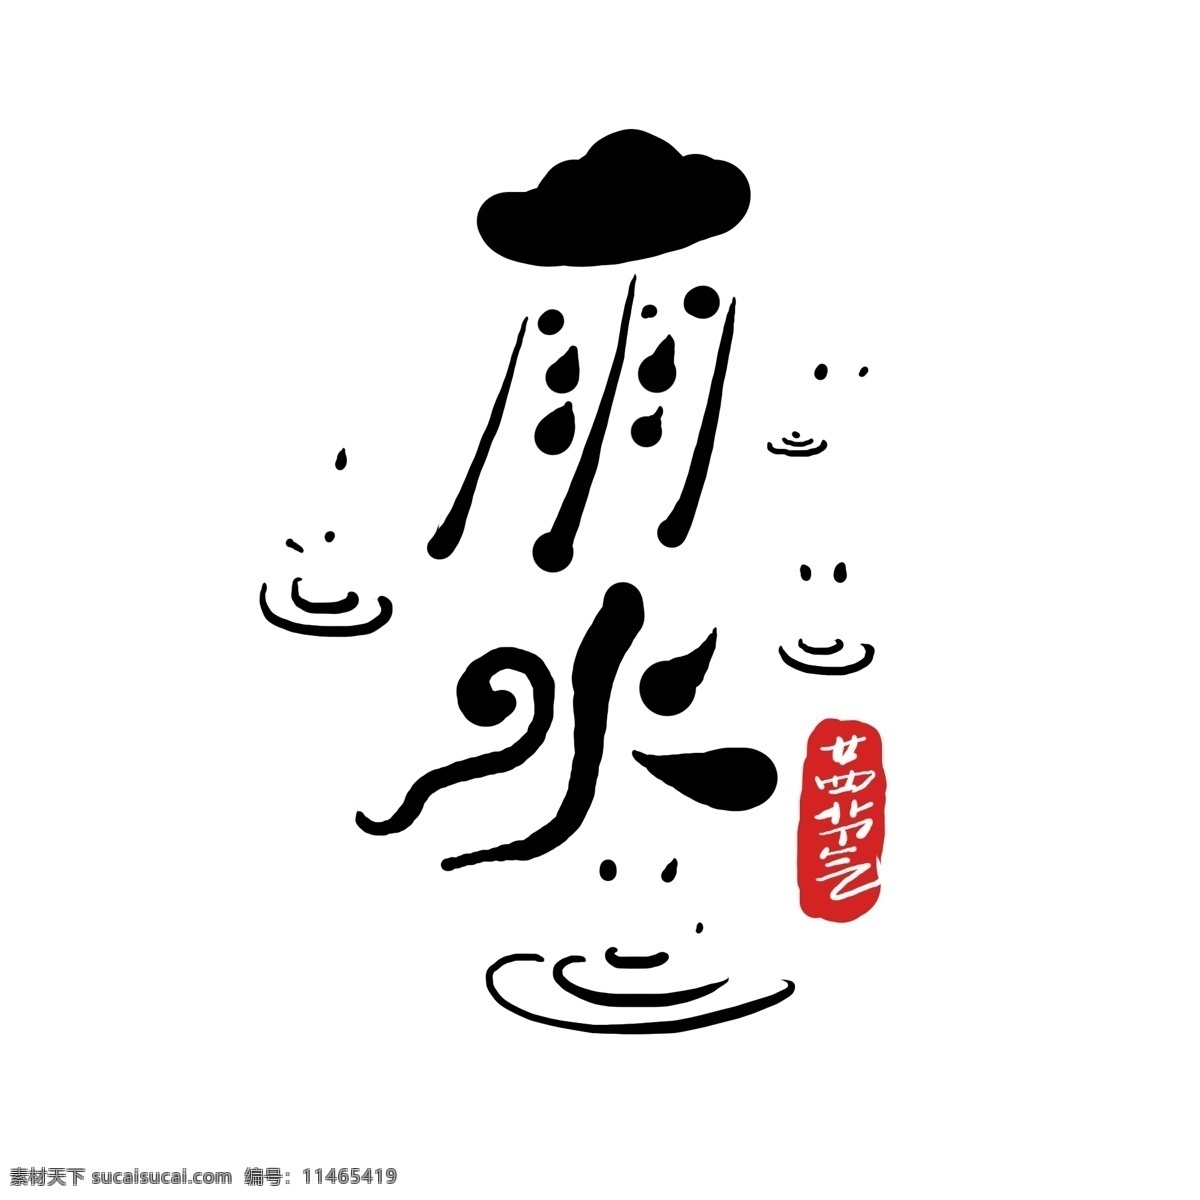 原创 节气 雨水 艺术 字 二十四节气 中国风 手写 书法 字体设计 原创字体 24节气 艺术字 雨水艺术字